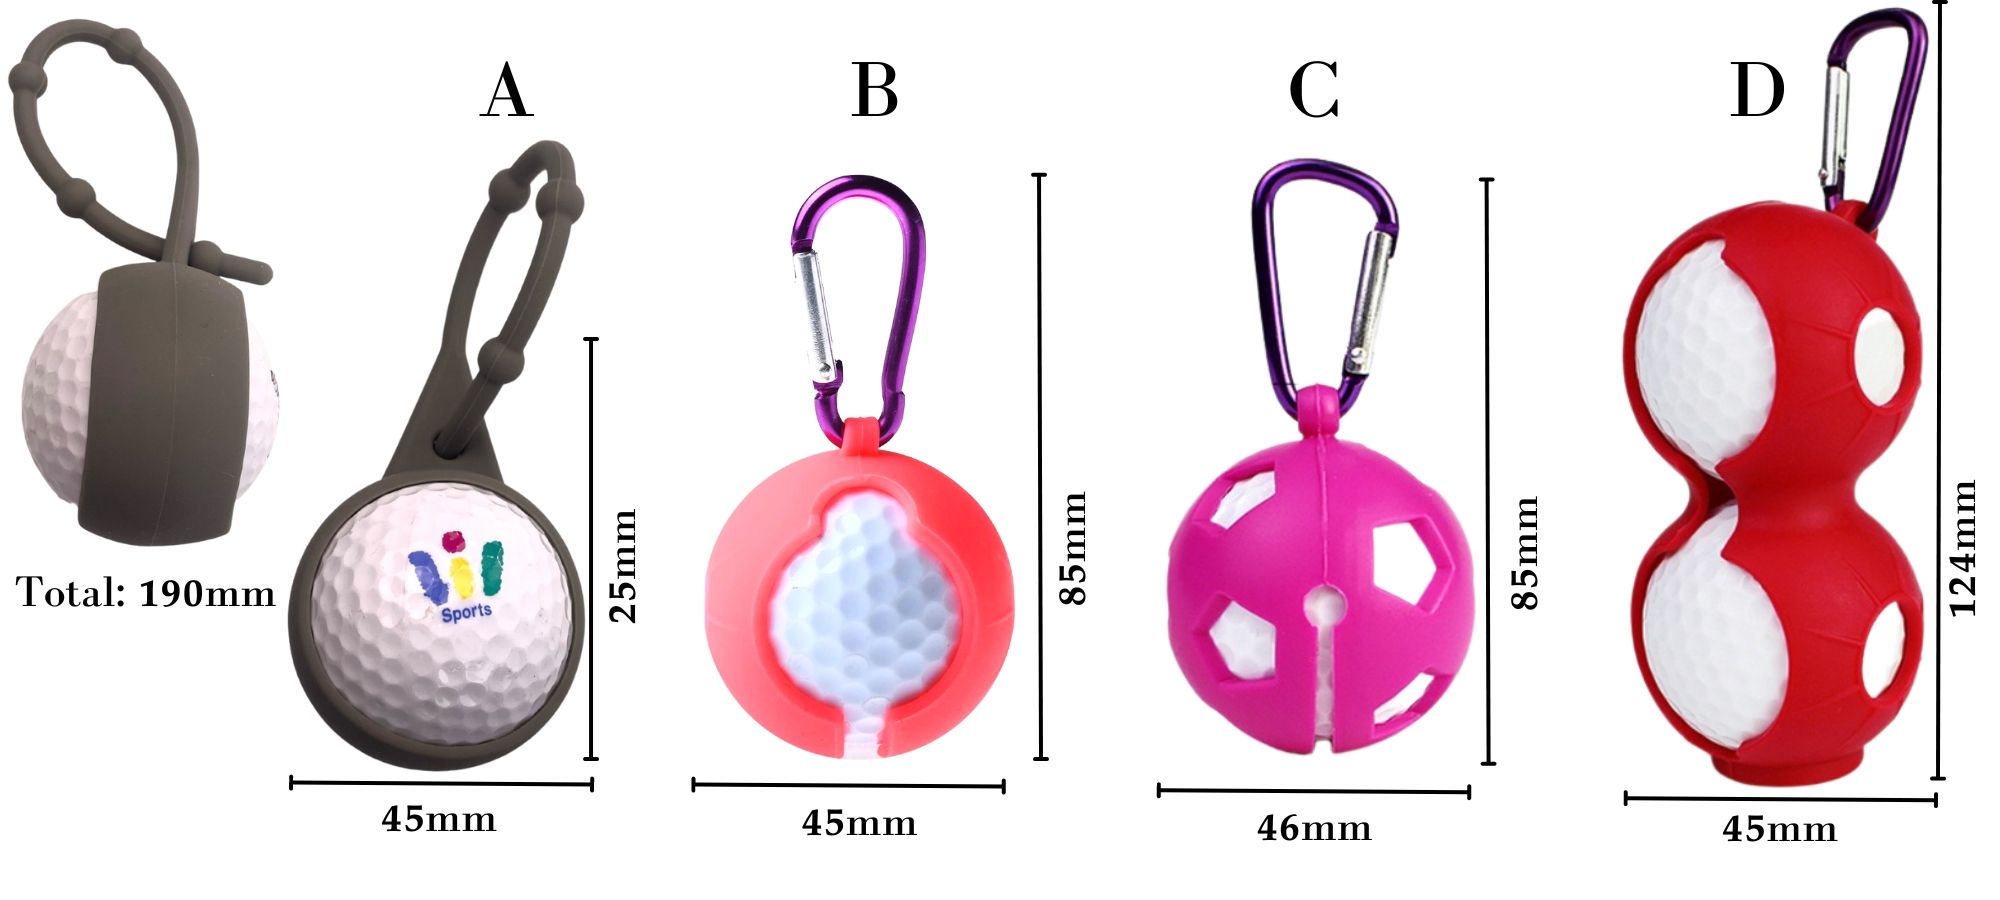 Silicone golf accessories.